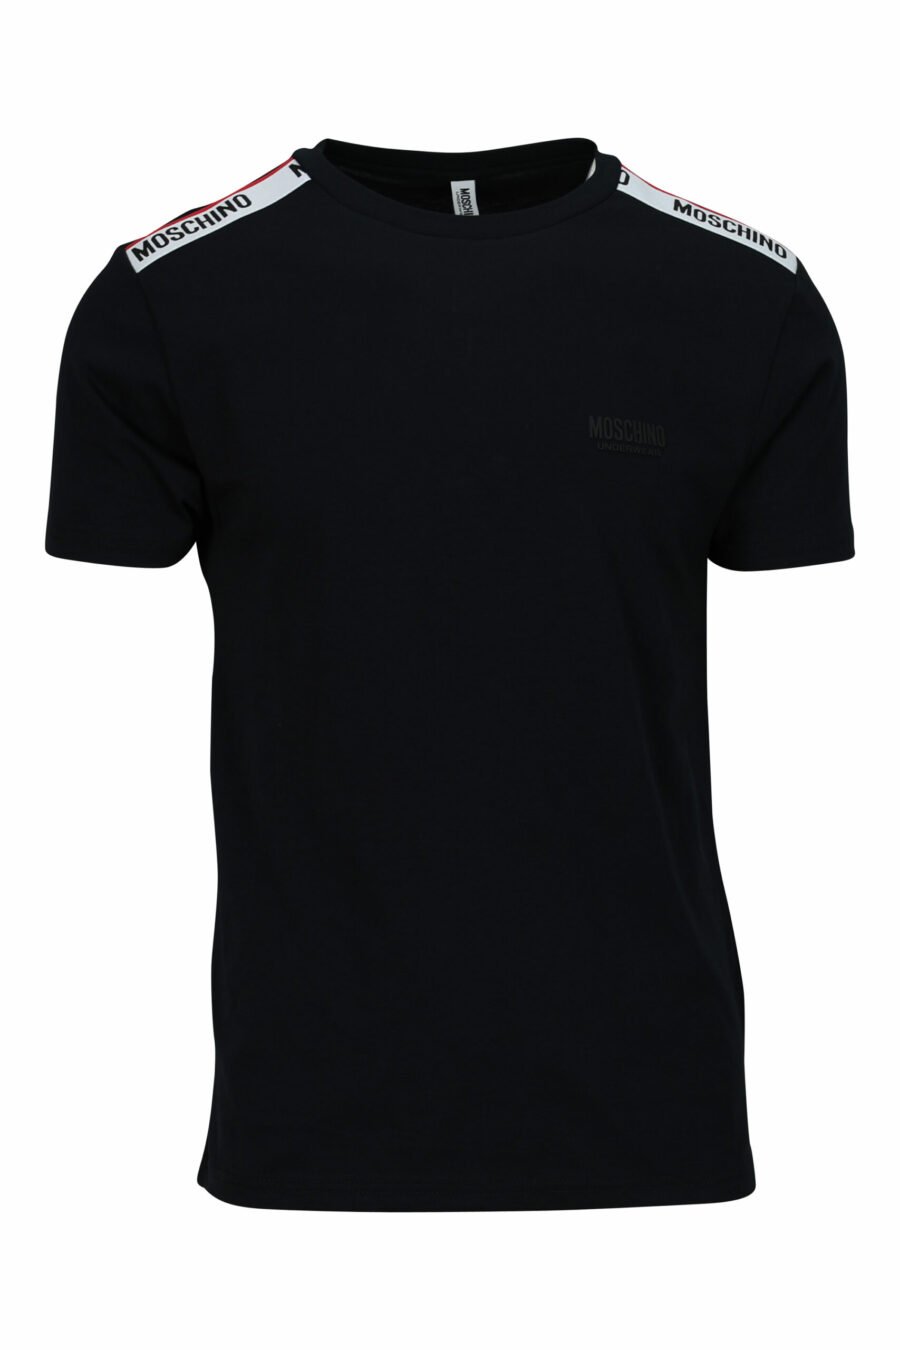 T-shirt preta com logótipo branco e pormenor de fita vermelha nos ombros - 667113604275 scaled